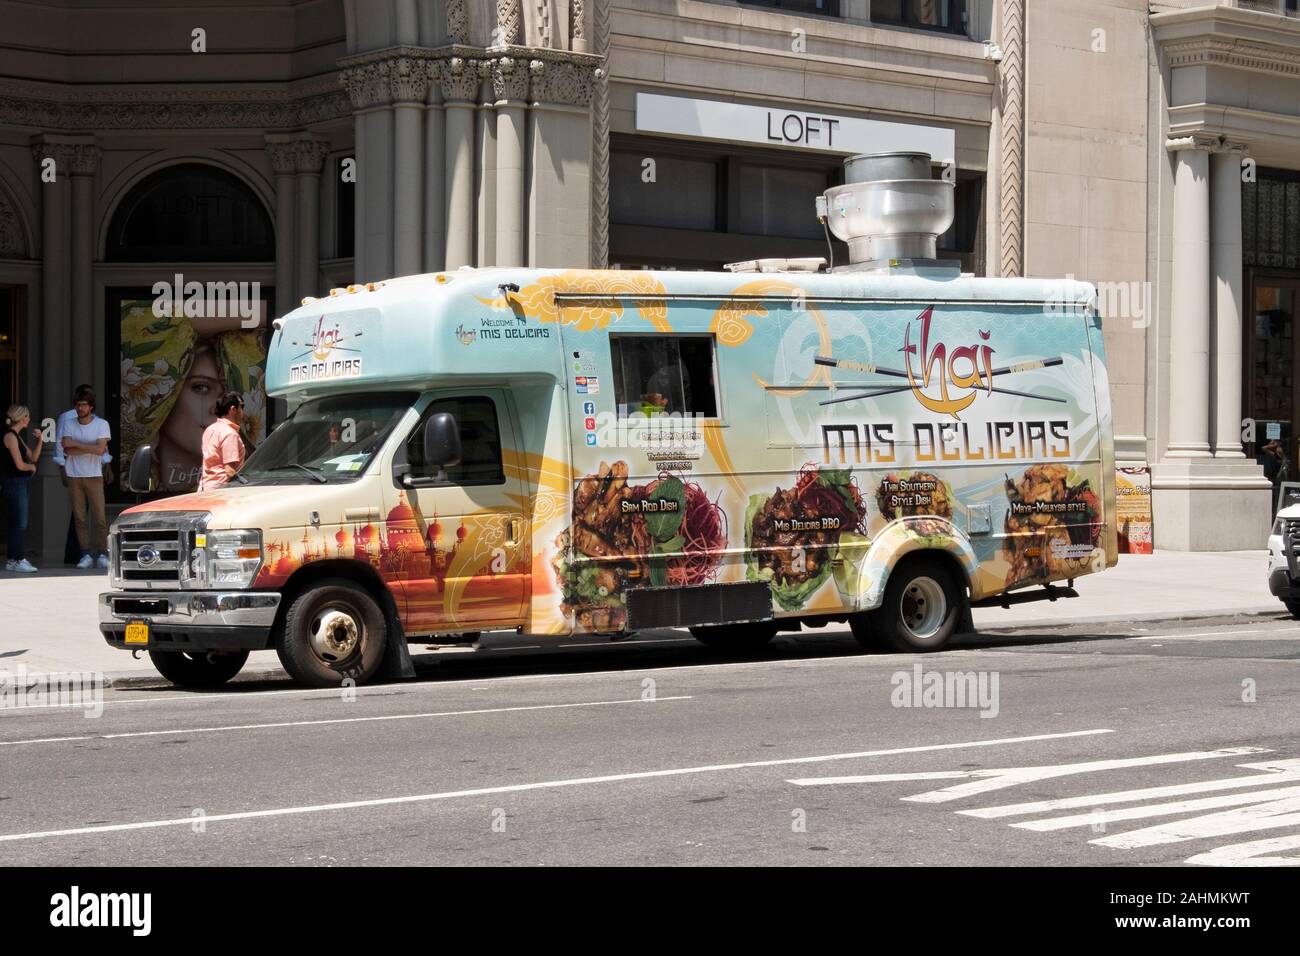 El THAI MIS DELICAS carretilla de comida rápida en la Quinta Avenida, en el distrito de Flatiron, Manhattan, Ciudad de Nueva York. Foto de stock